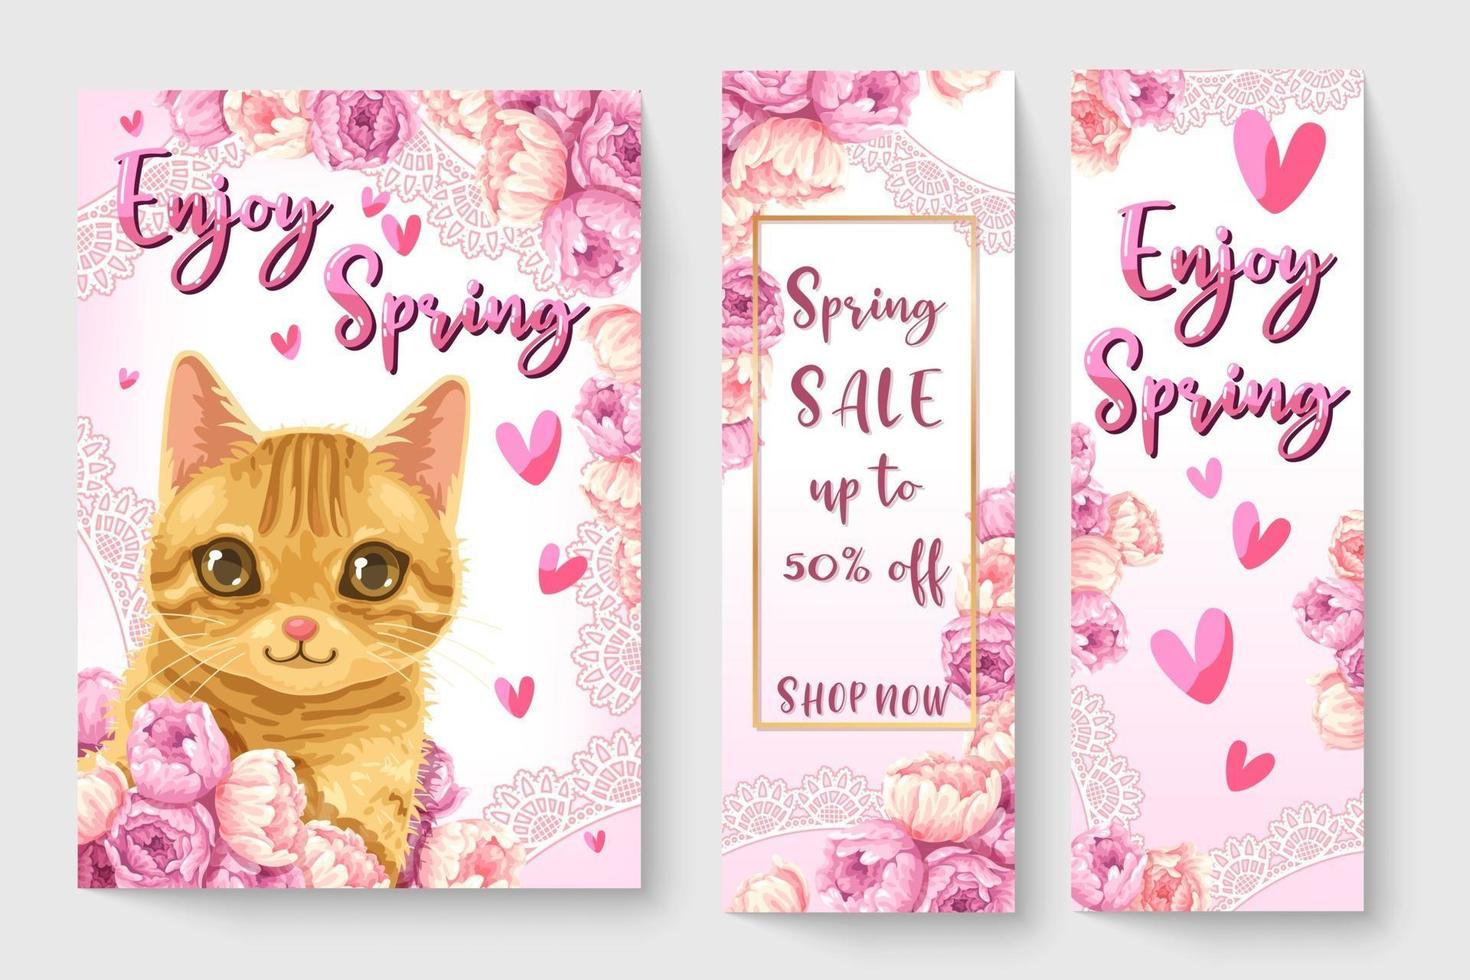 Süße kleine Katze mit Blumen im Frühlingsthema Illustration für Kindermodekunstwerke, Kinderbücher, Drucke, T-Shirt-Grafik. vektor